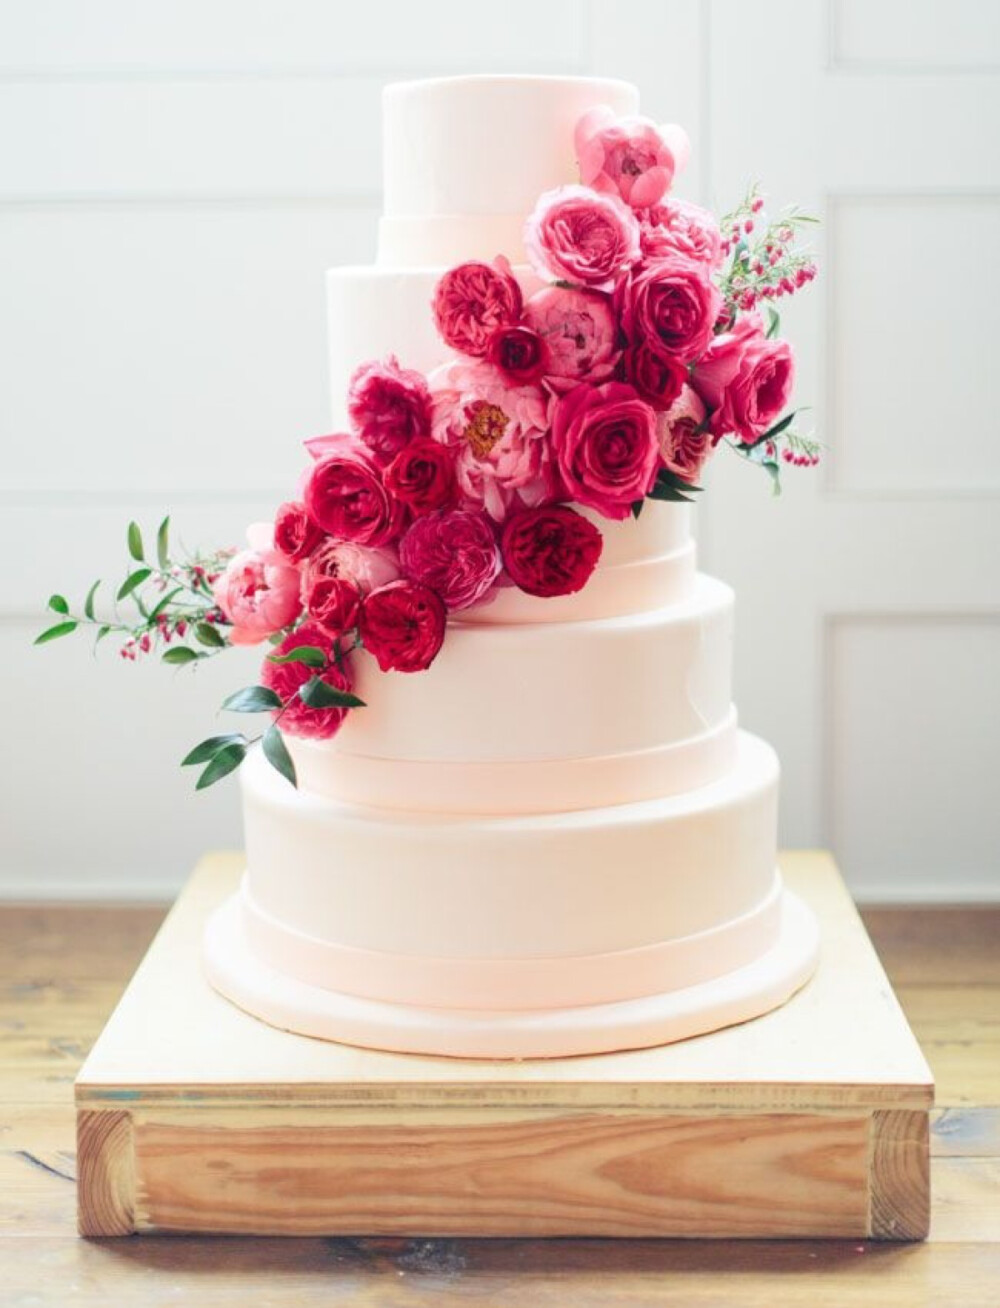 翻糖 蛋糕 生日 创意 婚礼 鲜花